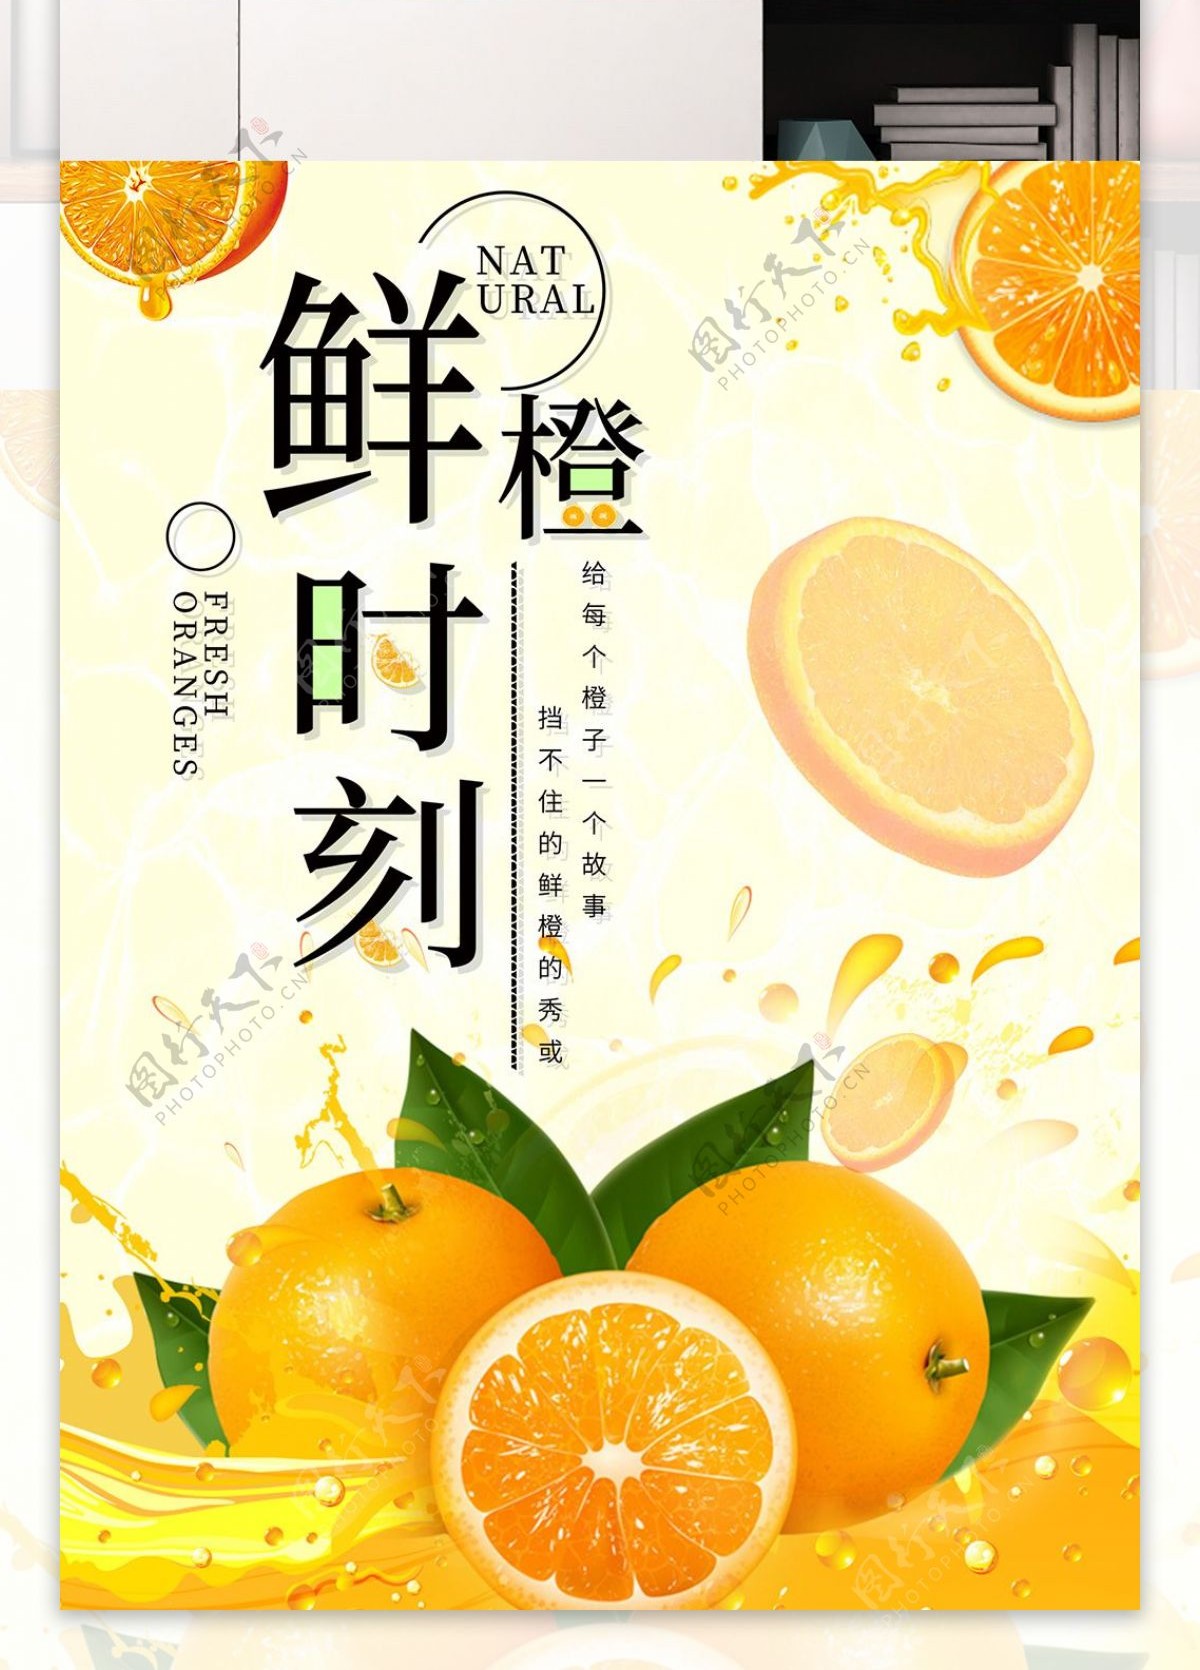 夏季鲜橙时刻海报